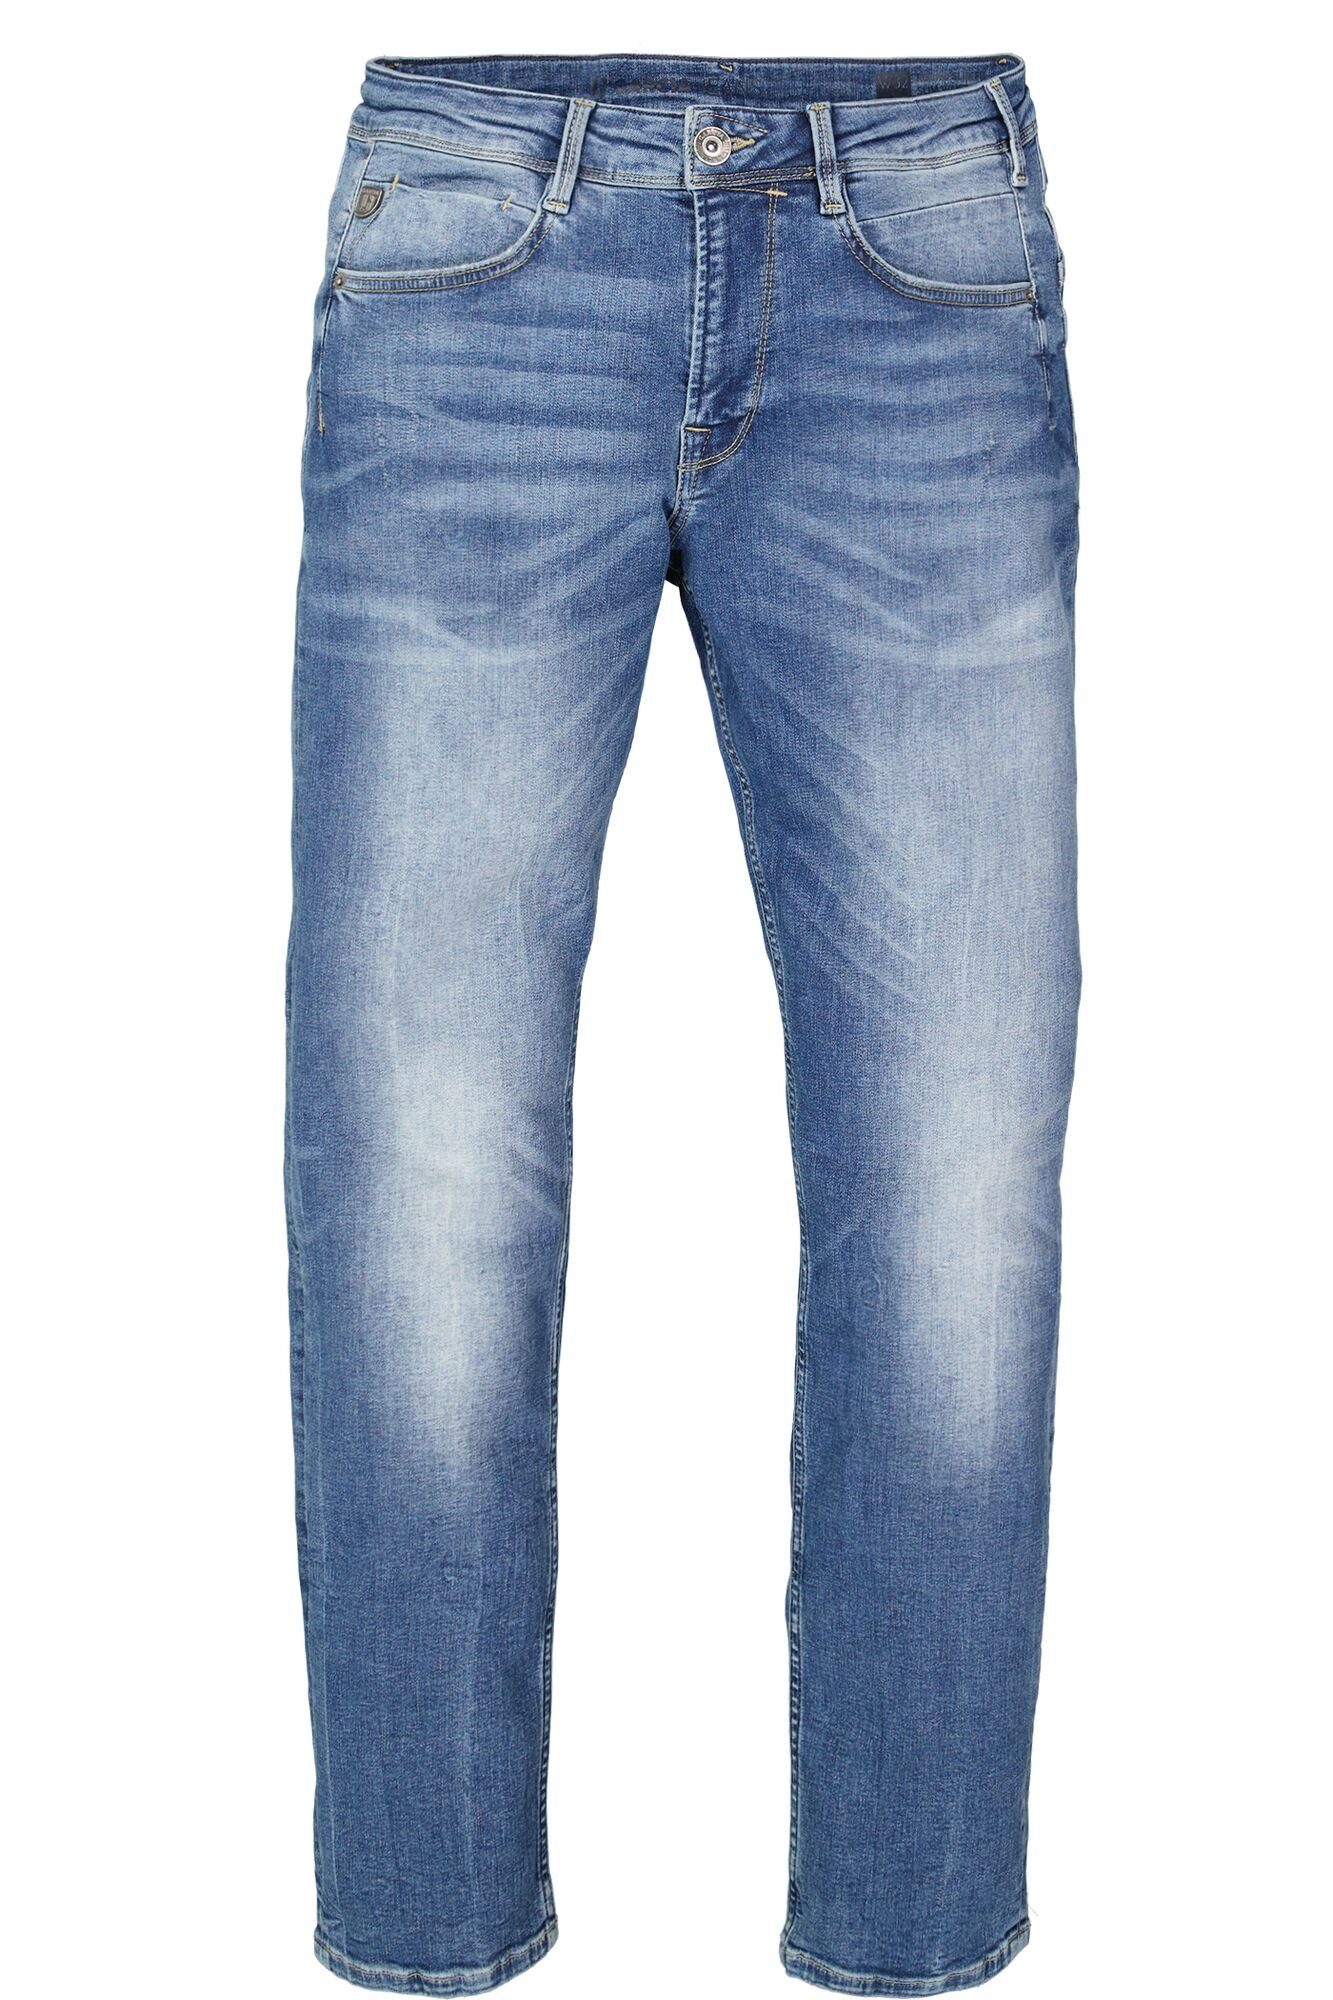 Rocko 5-Pocket-Jeans Waschungen verschiedenen in blue used vintage Garcia